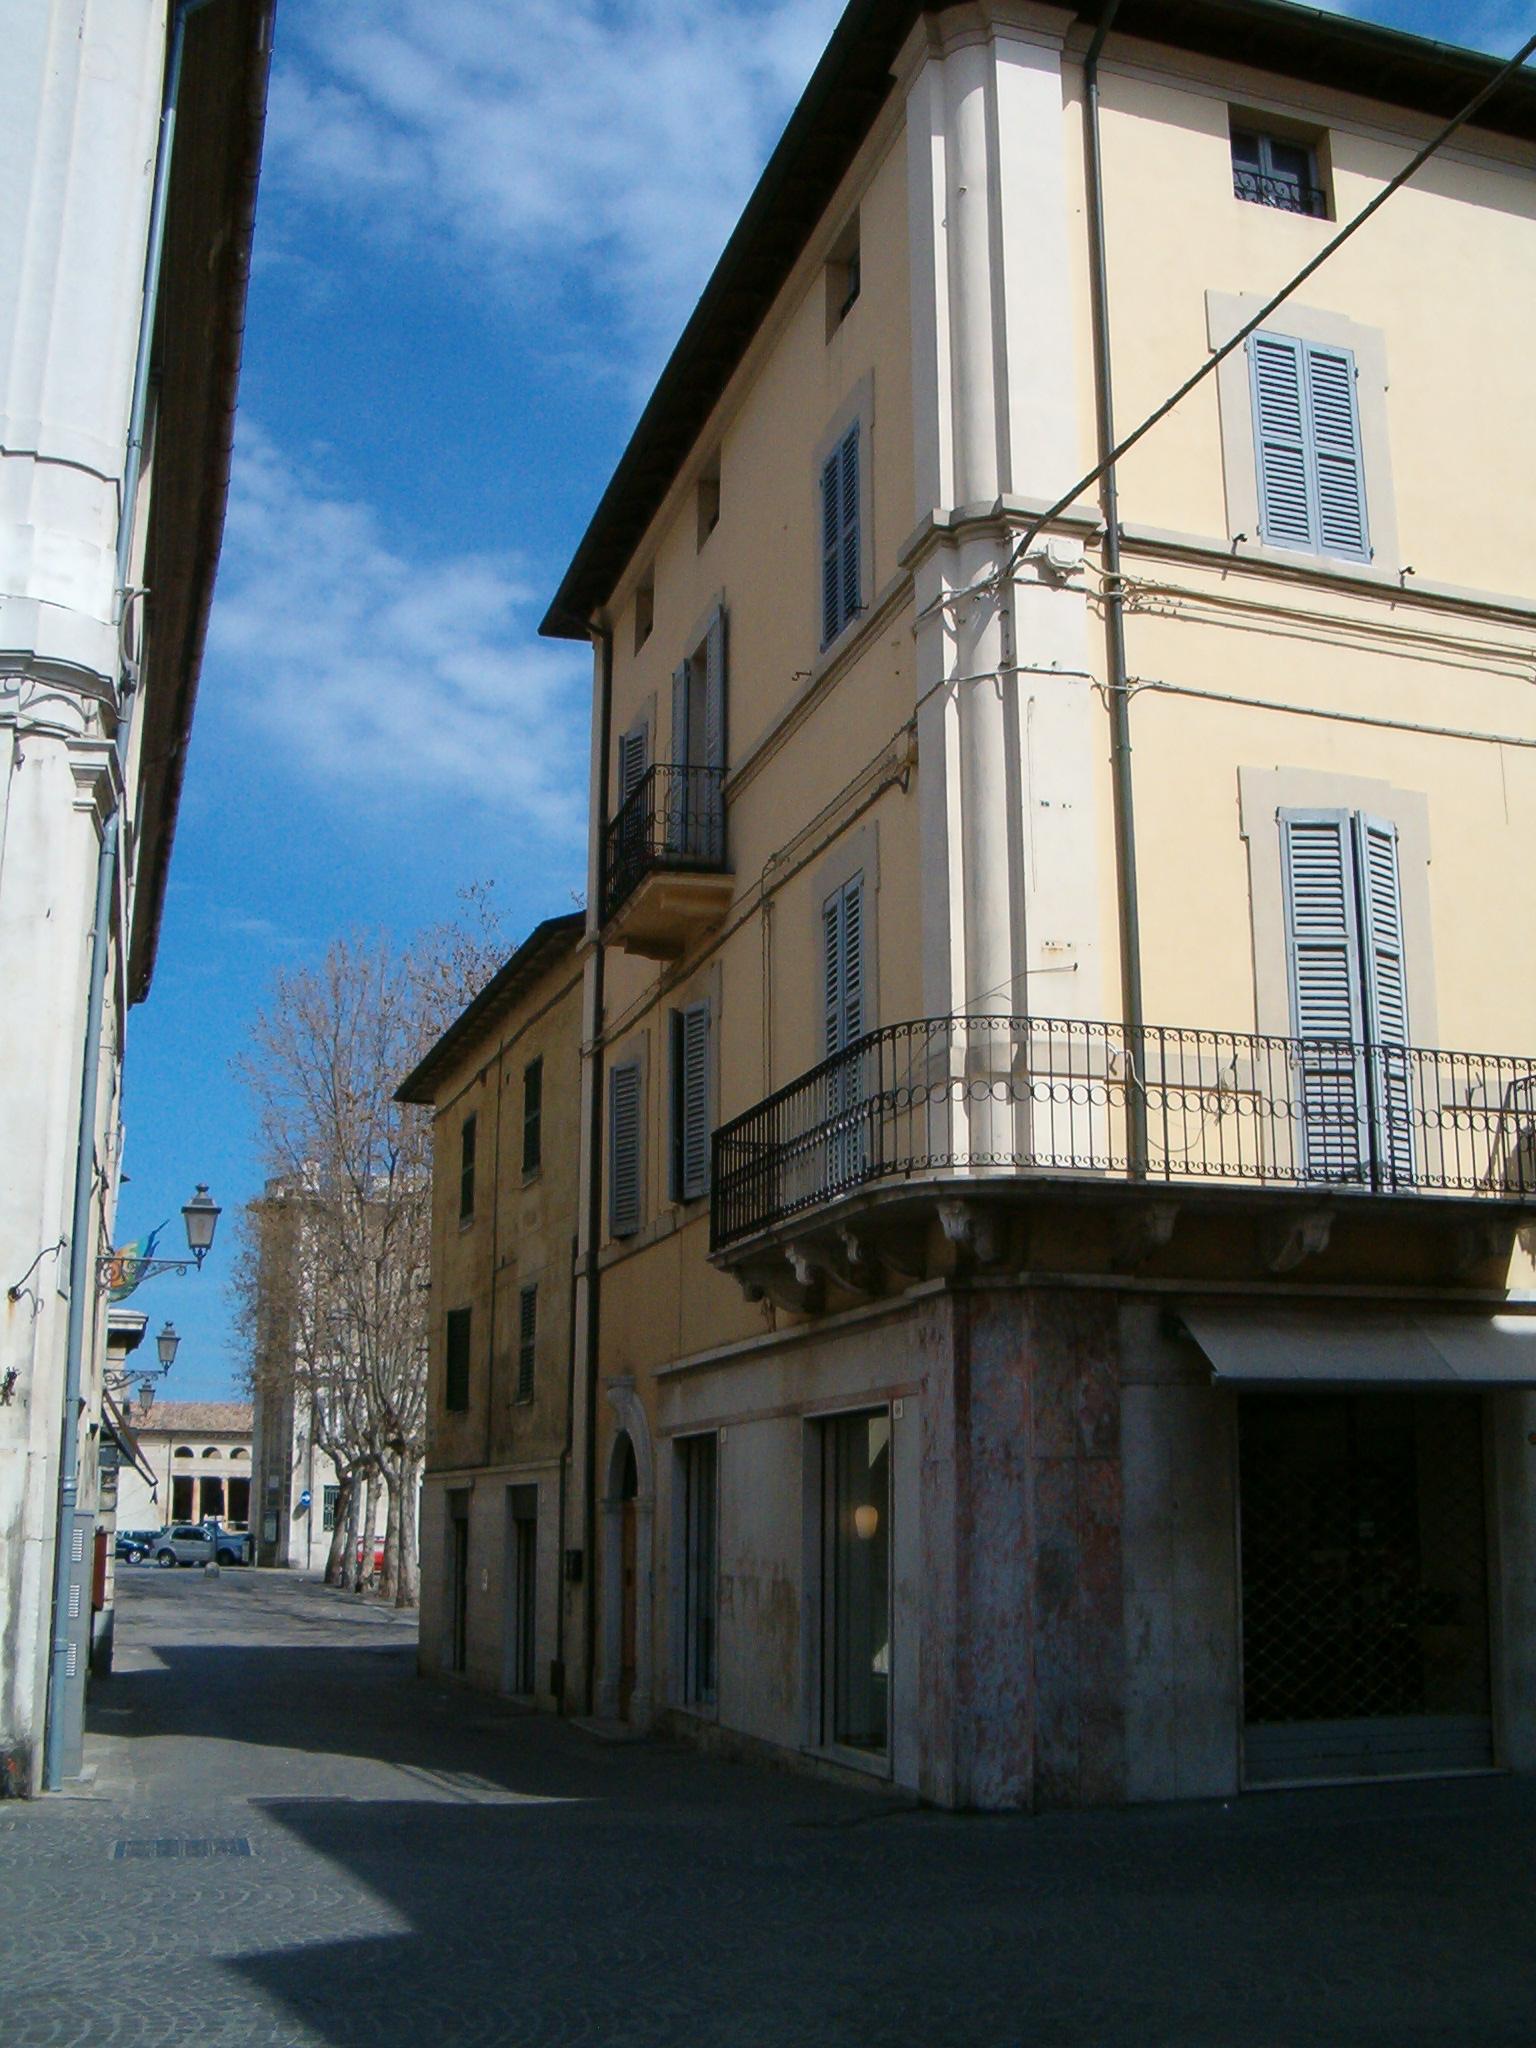 Palazzo di appartamenti (palazzo, di appartamenti) - Senigallia (AN) 